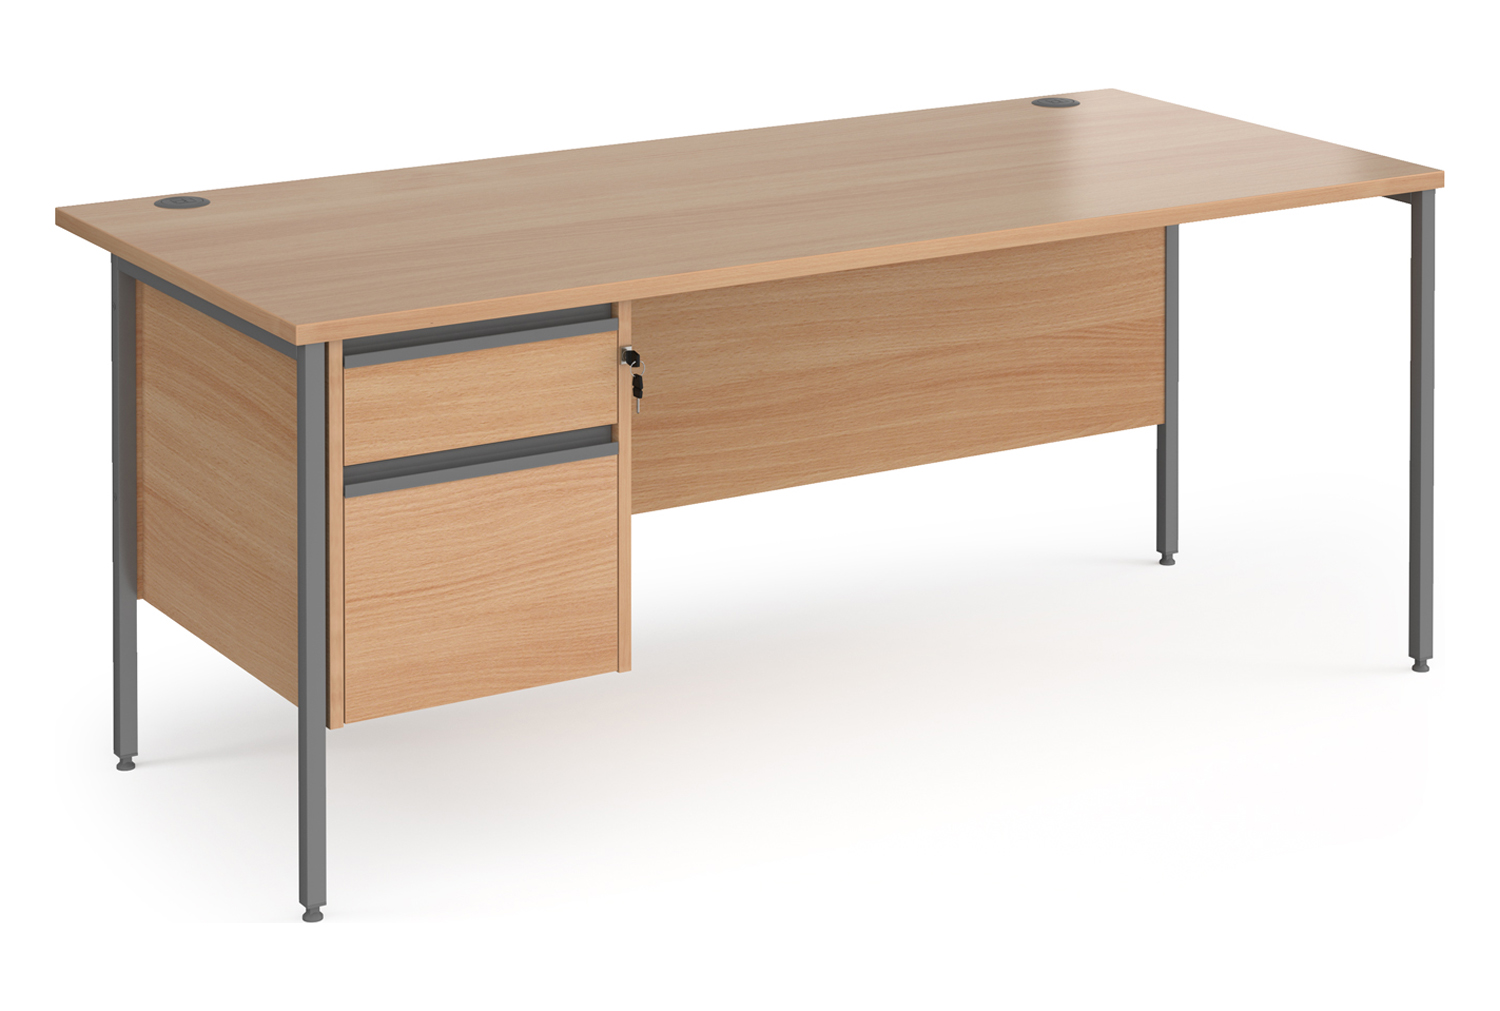 Value Line Classic+ Rectangular H-Leg Office Desk 2 Drawers (Graphite Leg), 180wx80dx73h (cm), Beech, Fully Installed